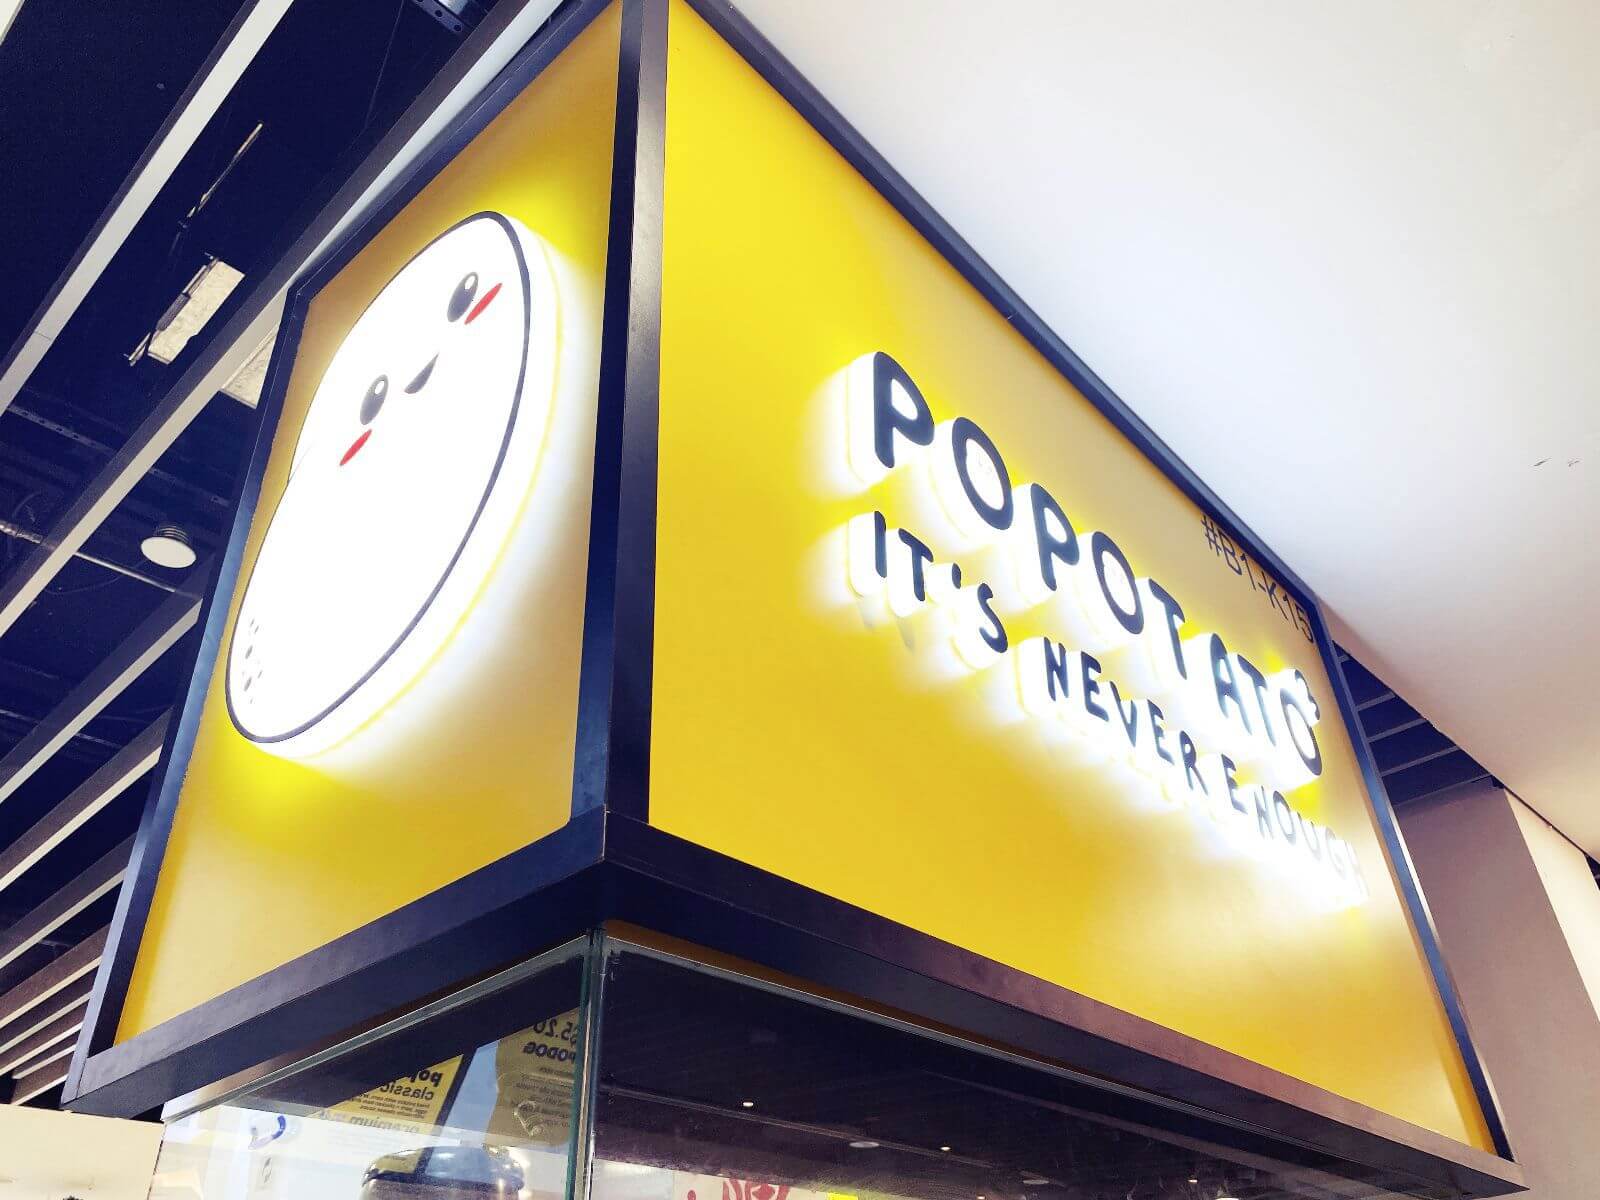 Potato Themed Fast Food Kiosk In A Mall Located In Yishun